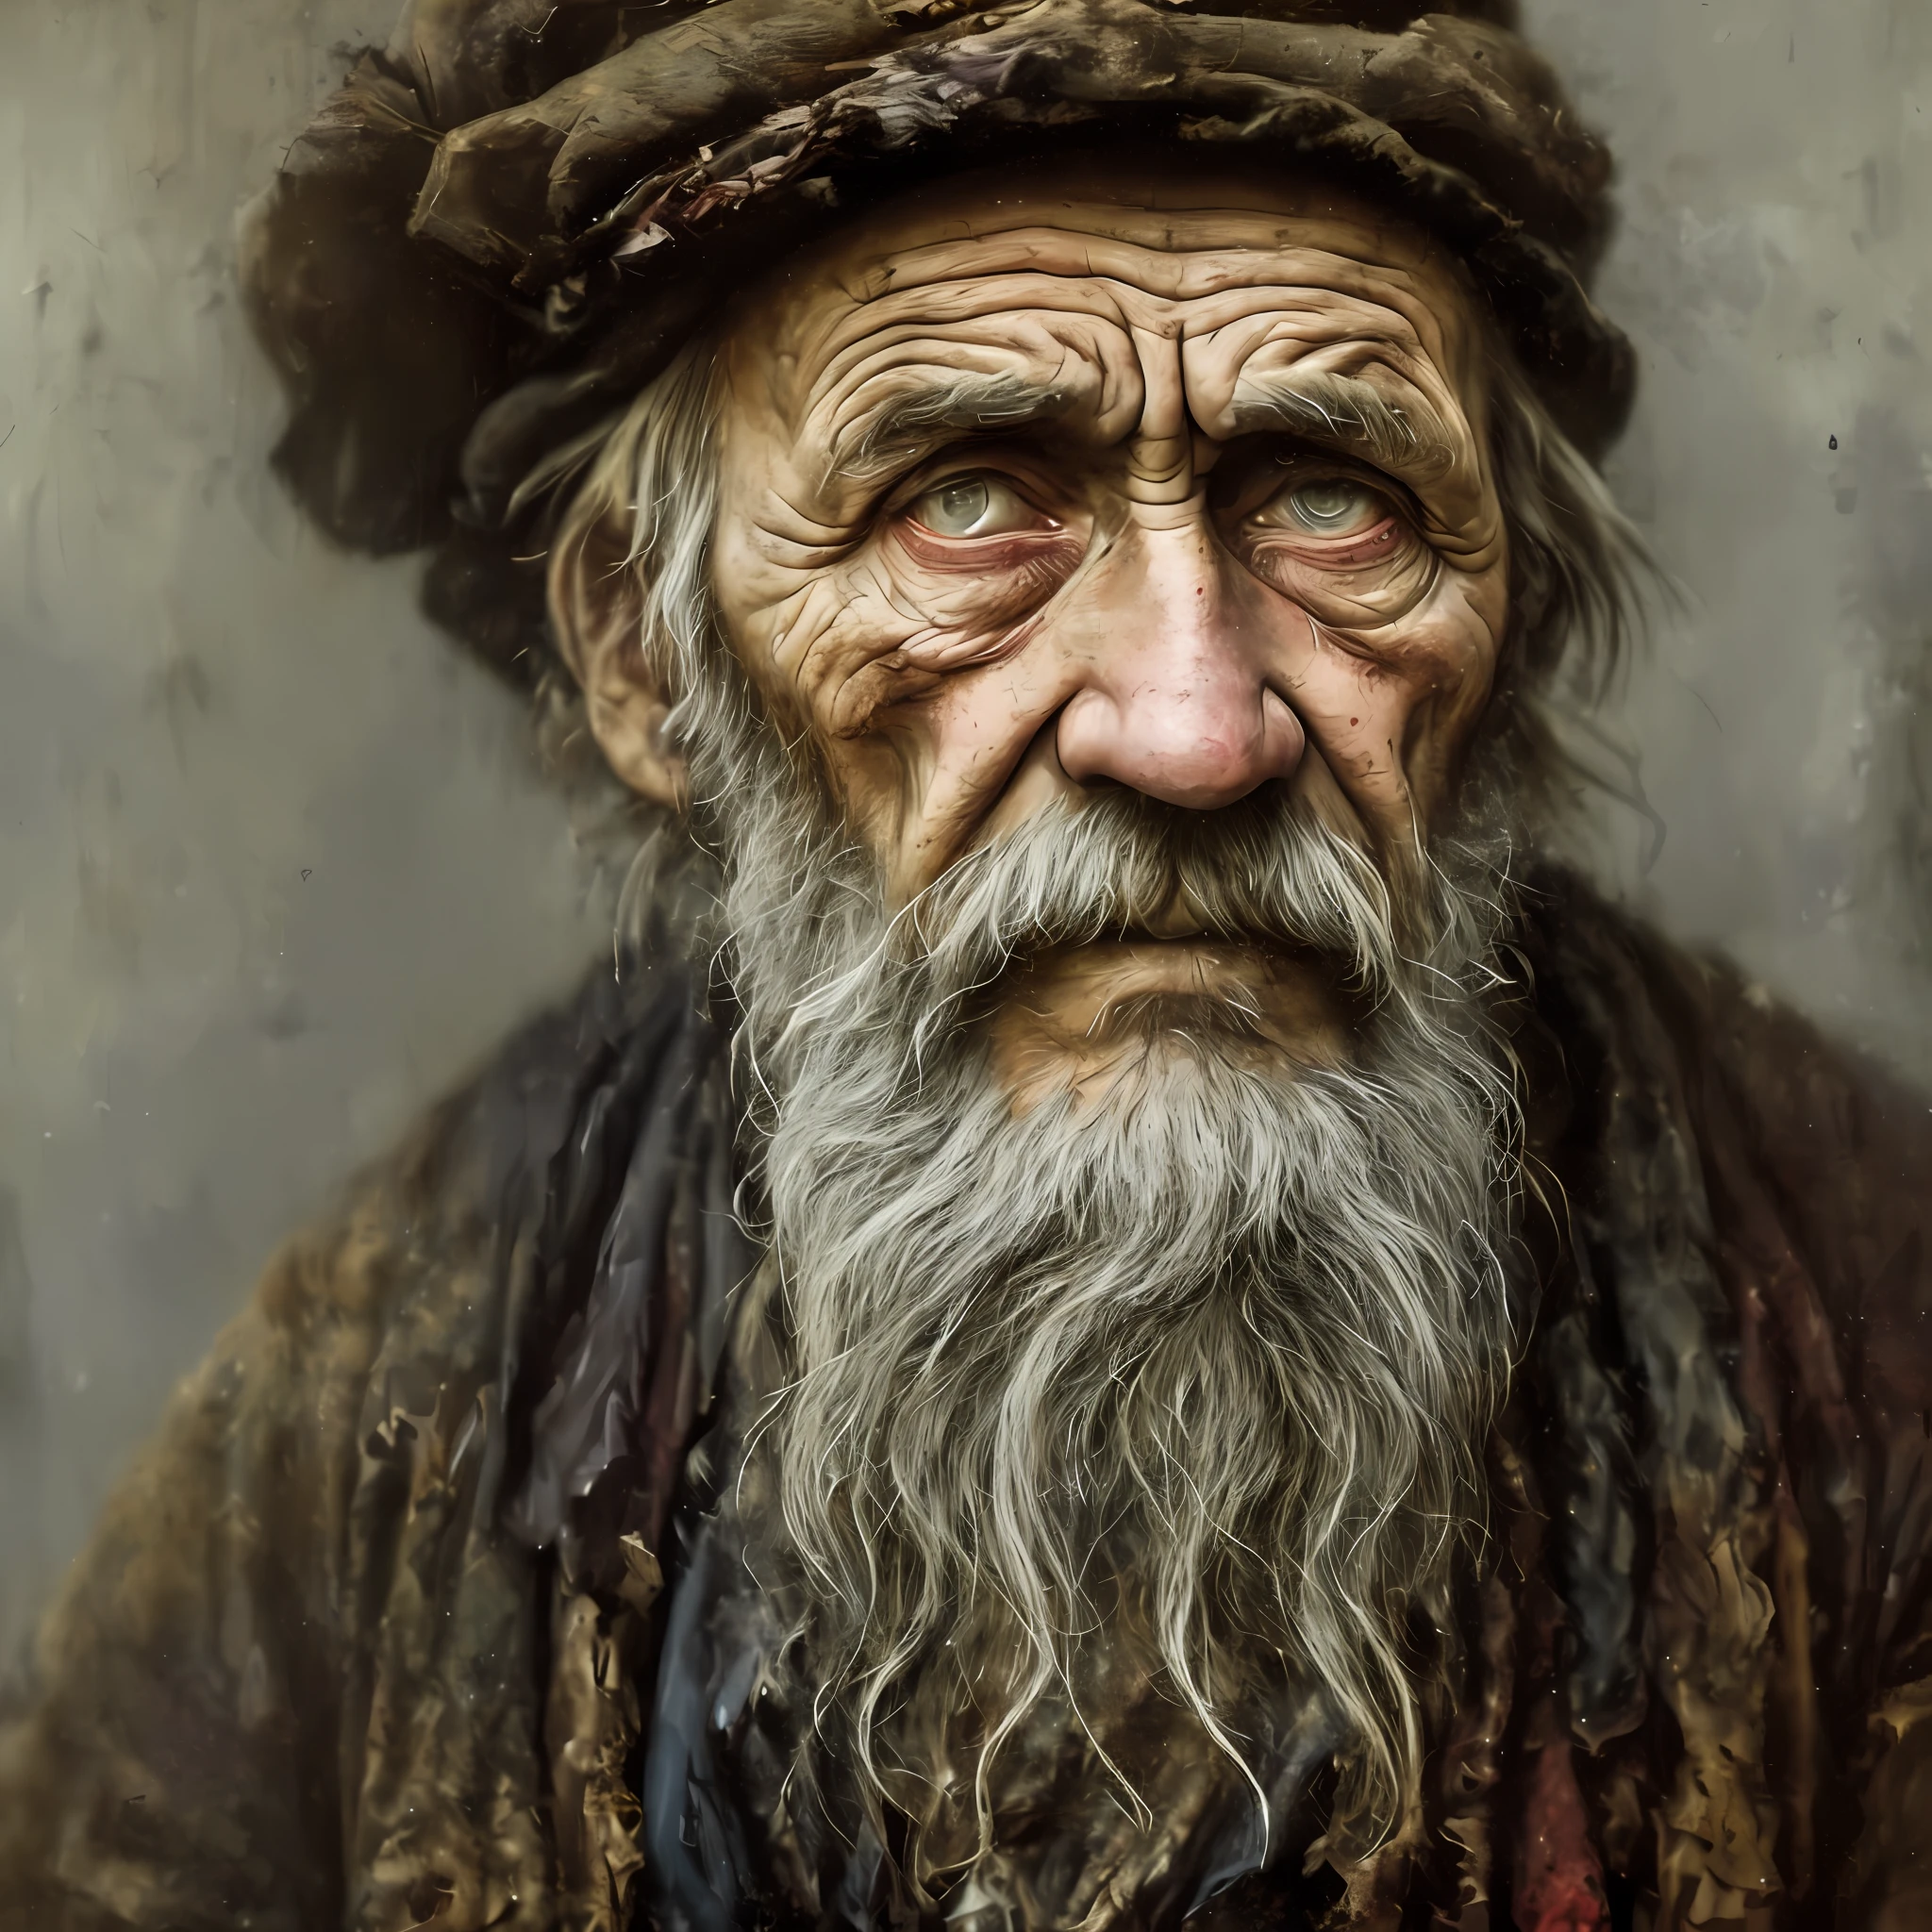 Ein Porträt eines armen russischen Arbeiters in Lumpen aus dem Jahr 1800, ((überwältigende Müdigkeit )), Altersfalten, Konzeptkunst, Ölpastellmalerei , stimmungsvolle graue Farben , grobkörnig, chaotischer StilStil von Alexey Savrasov, Iwan Schischkin, Ilja Repin, (Cel-Shading-Technik:1.2), 2D, (Ölgemälde:1.2) sehr detailliert